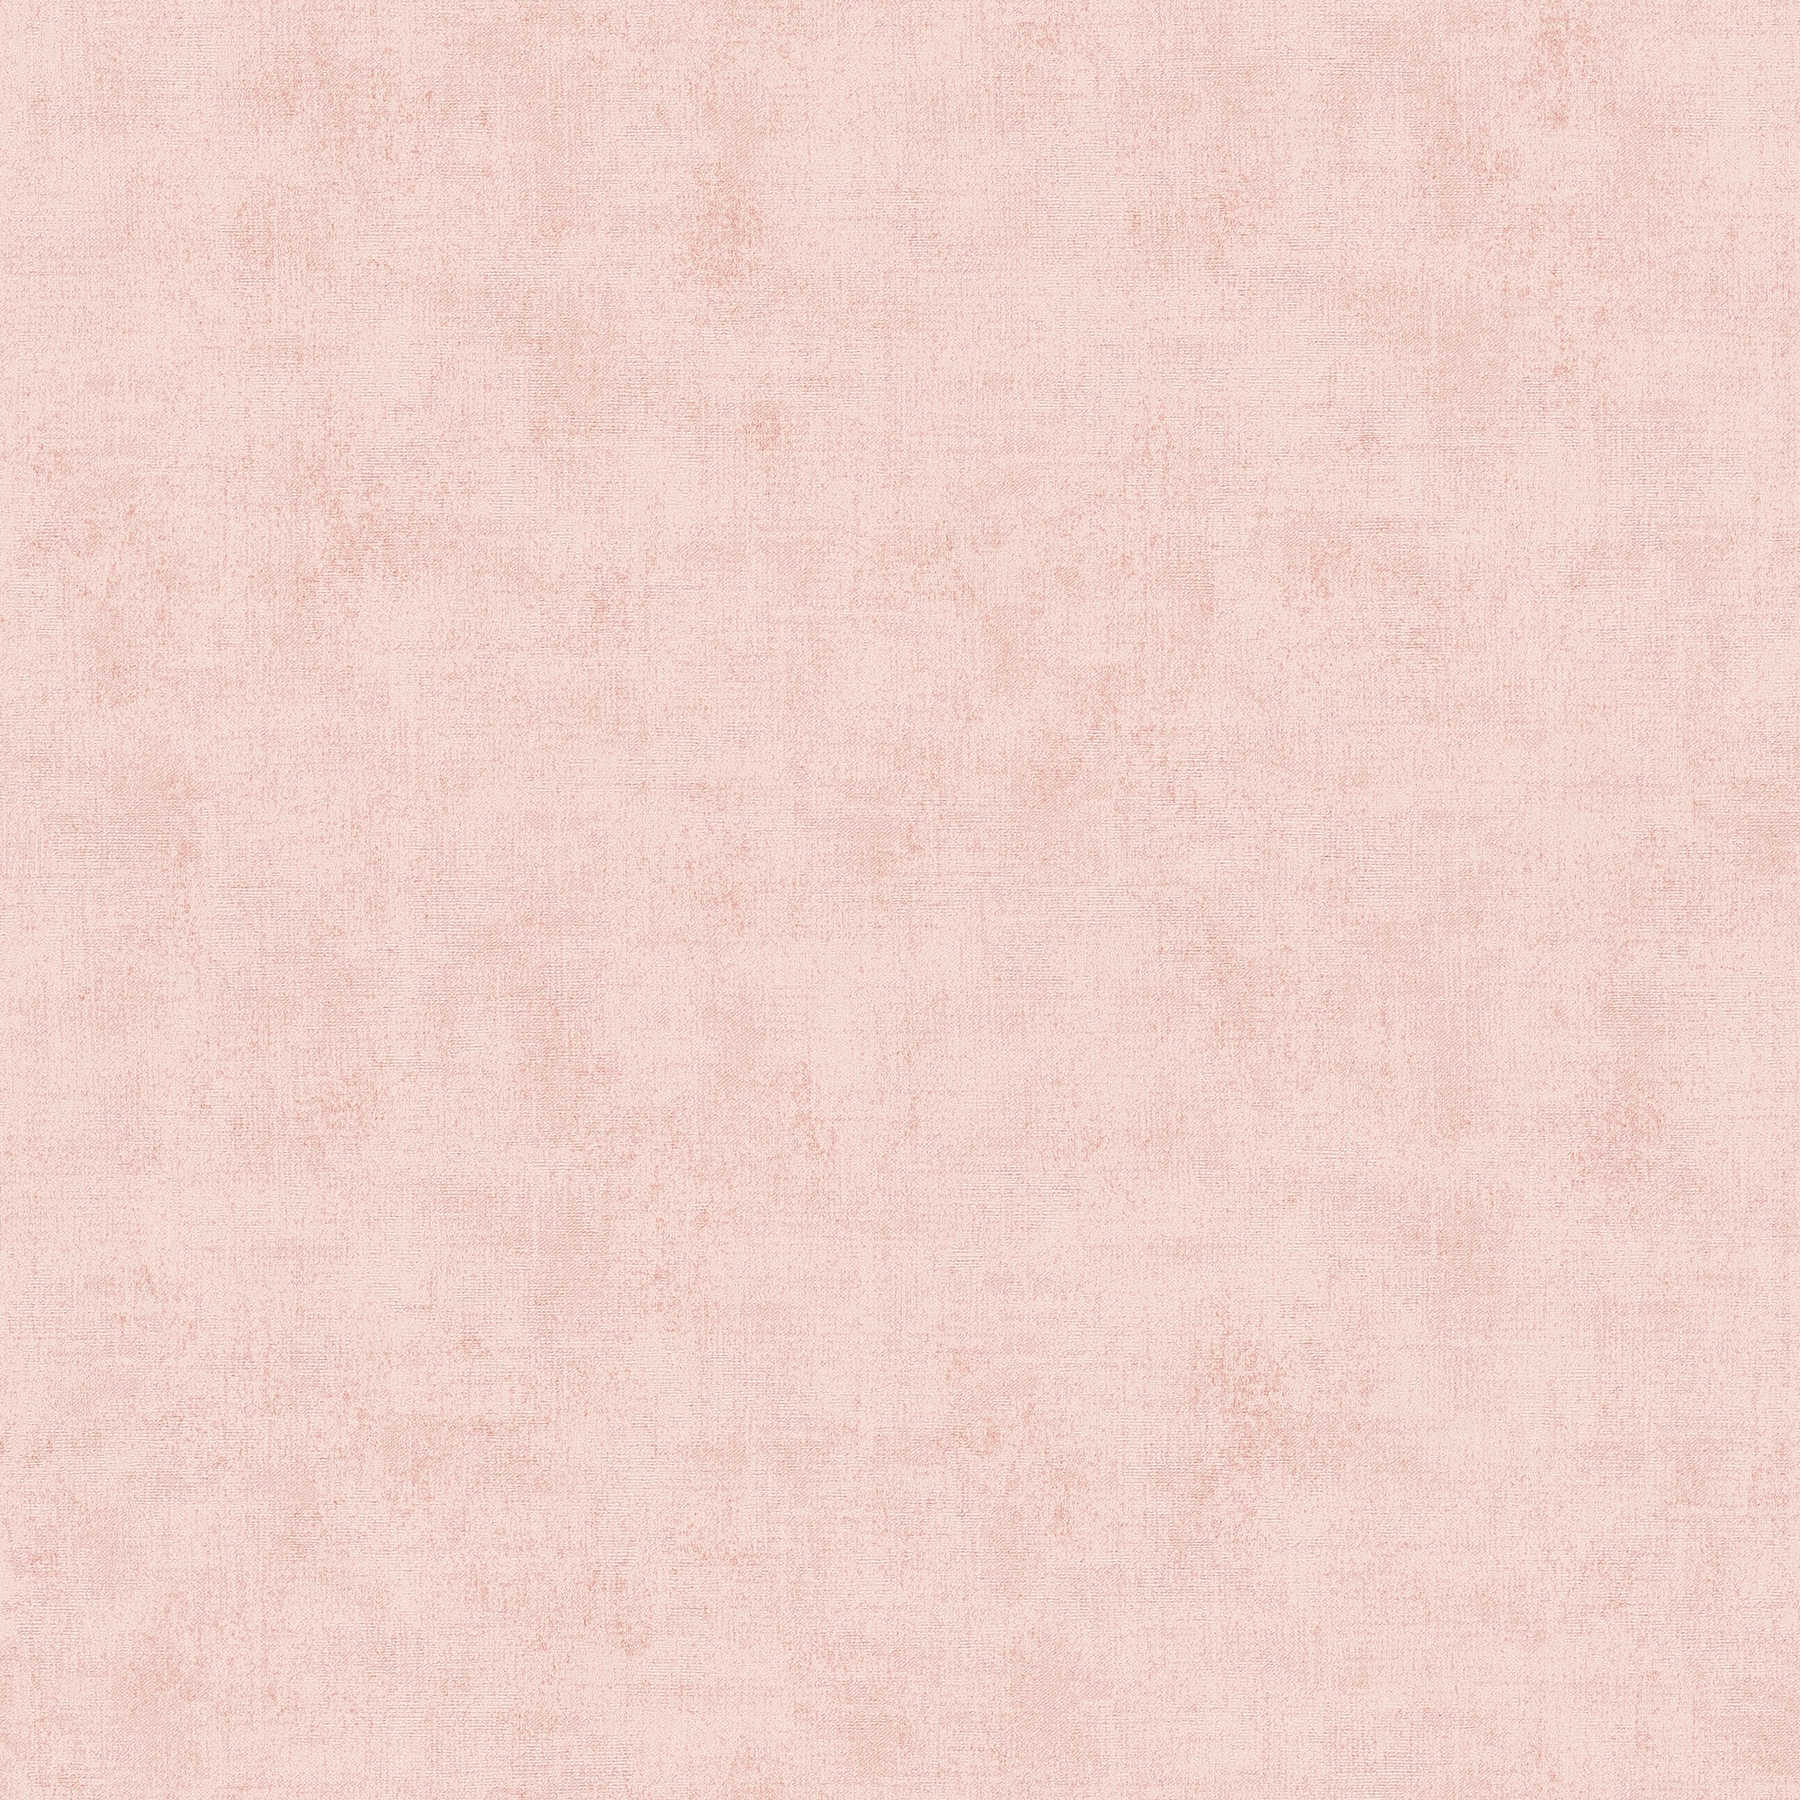         Carta da parati con struttura discreta - rosa
    